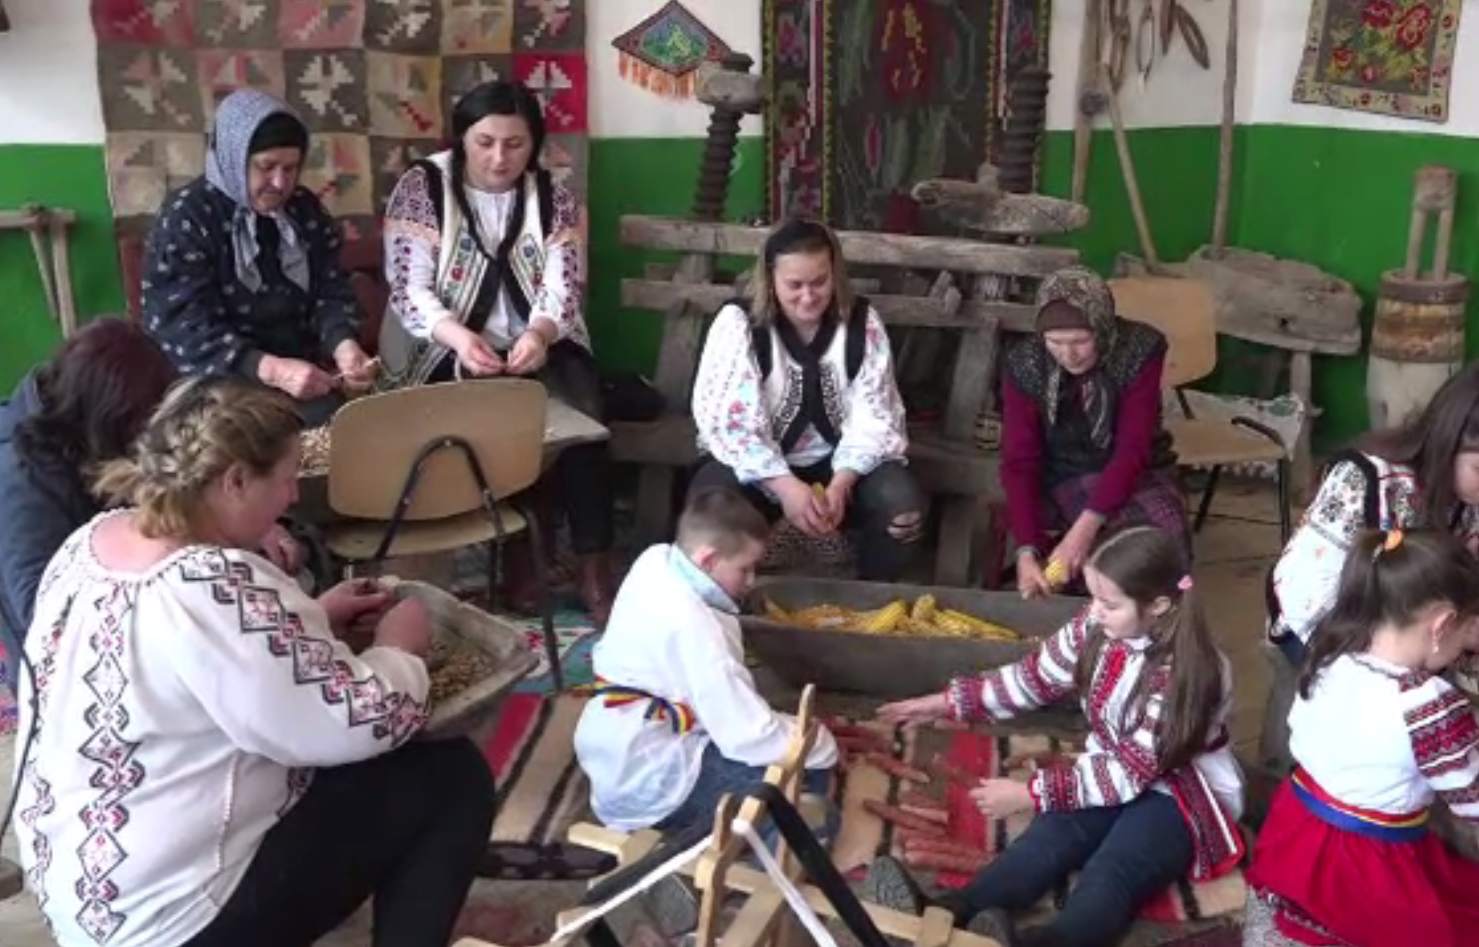 Prima șezătoare organizată în Vaslui, după mult timp. Tinerii s-au strâns în jurul focului, dornici să învețe tradițiile